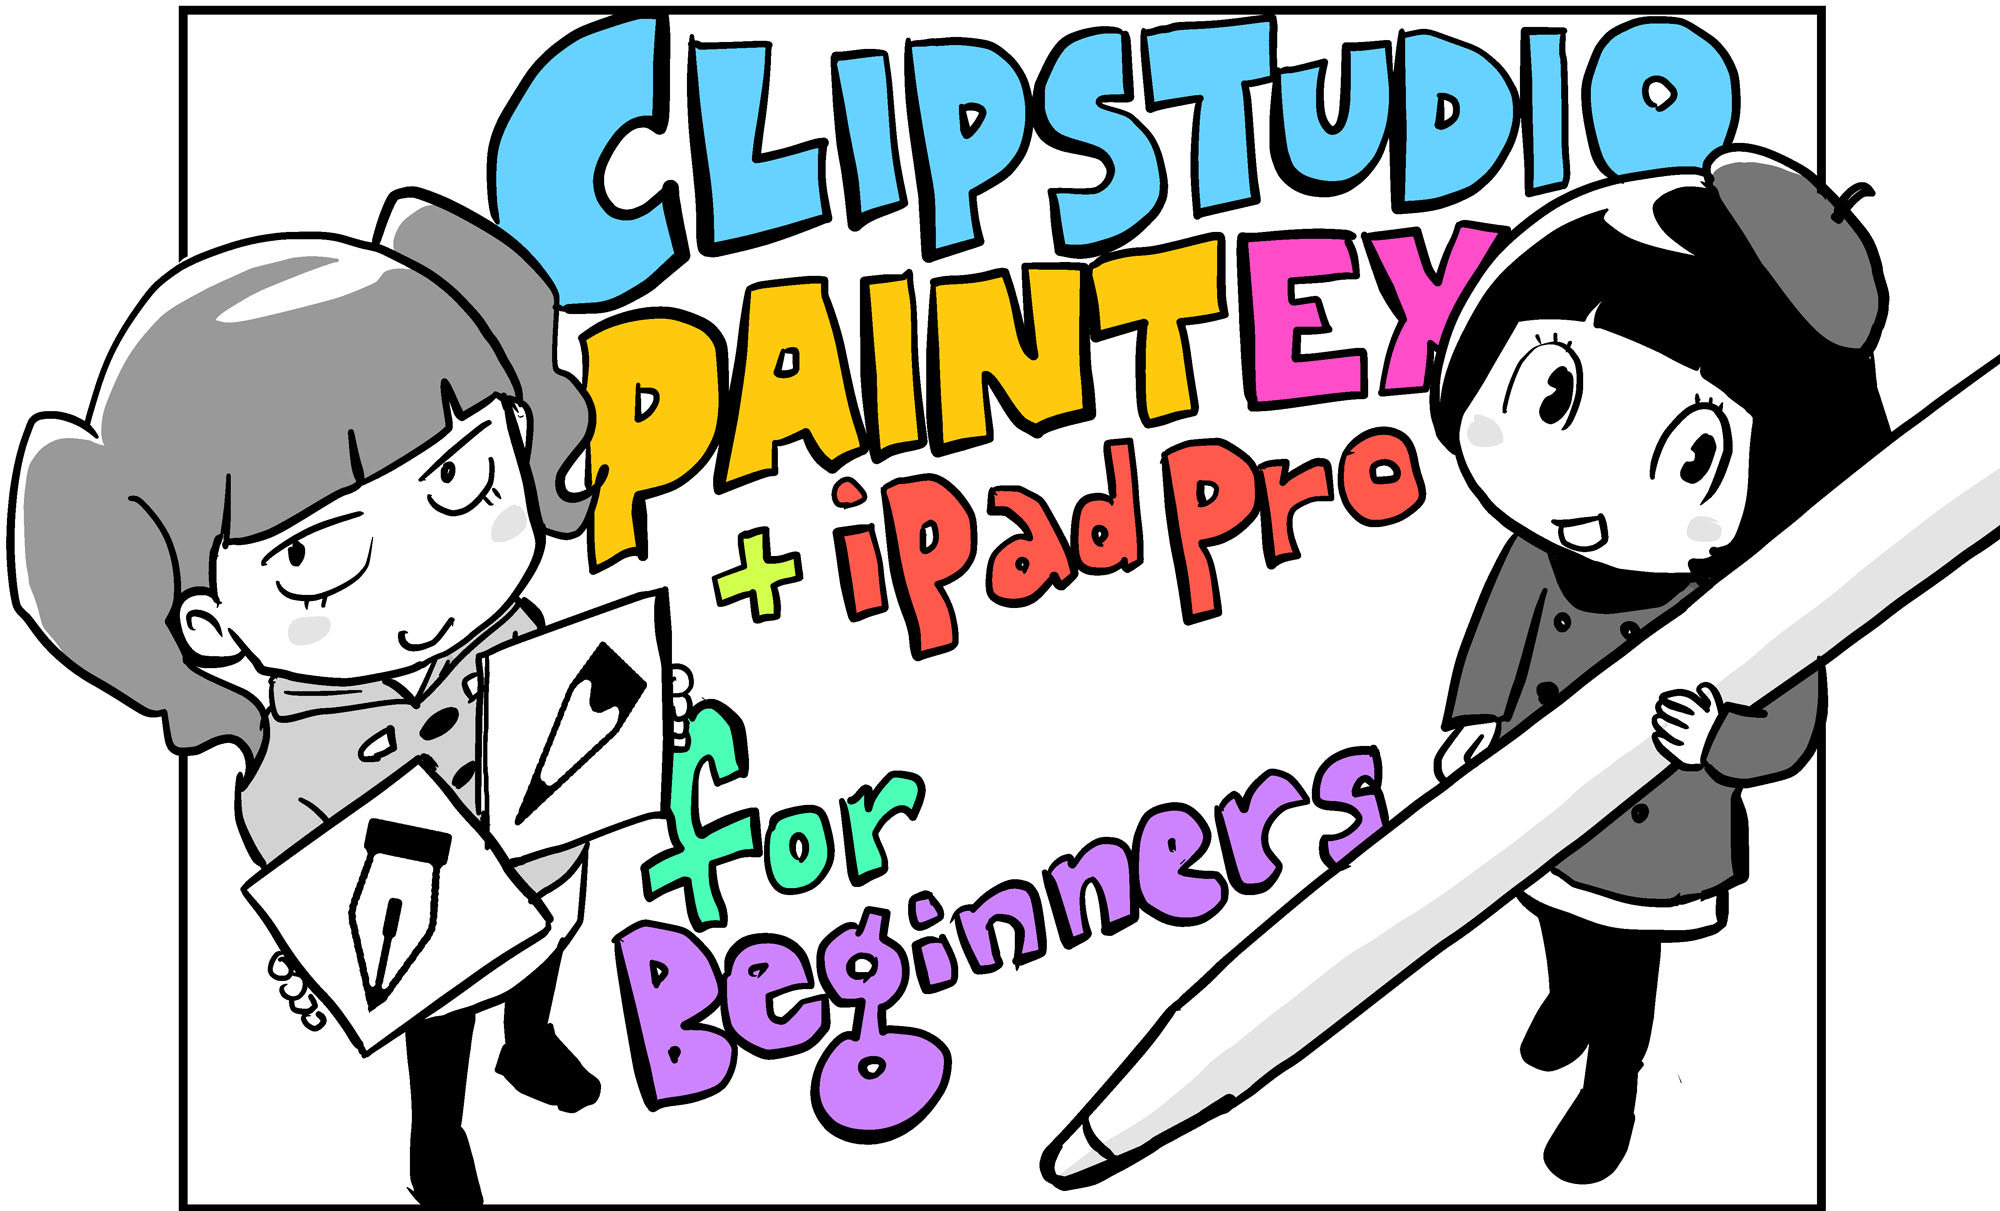 ベクター と ラスター の違いって何 最も基礎的なレイヤーの種類と使い分け 青木俊直 Clip Studio Paint Ex Ipad Pro For Beginners 第3回 Pictures